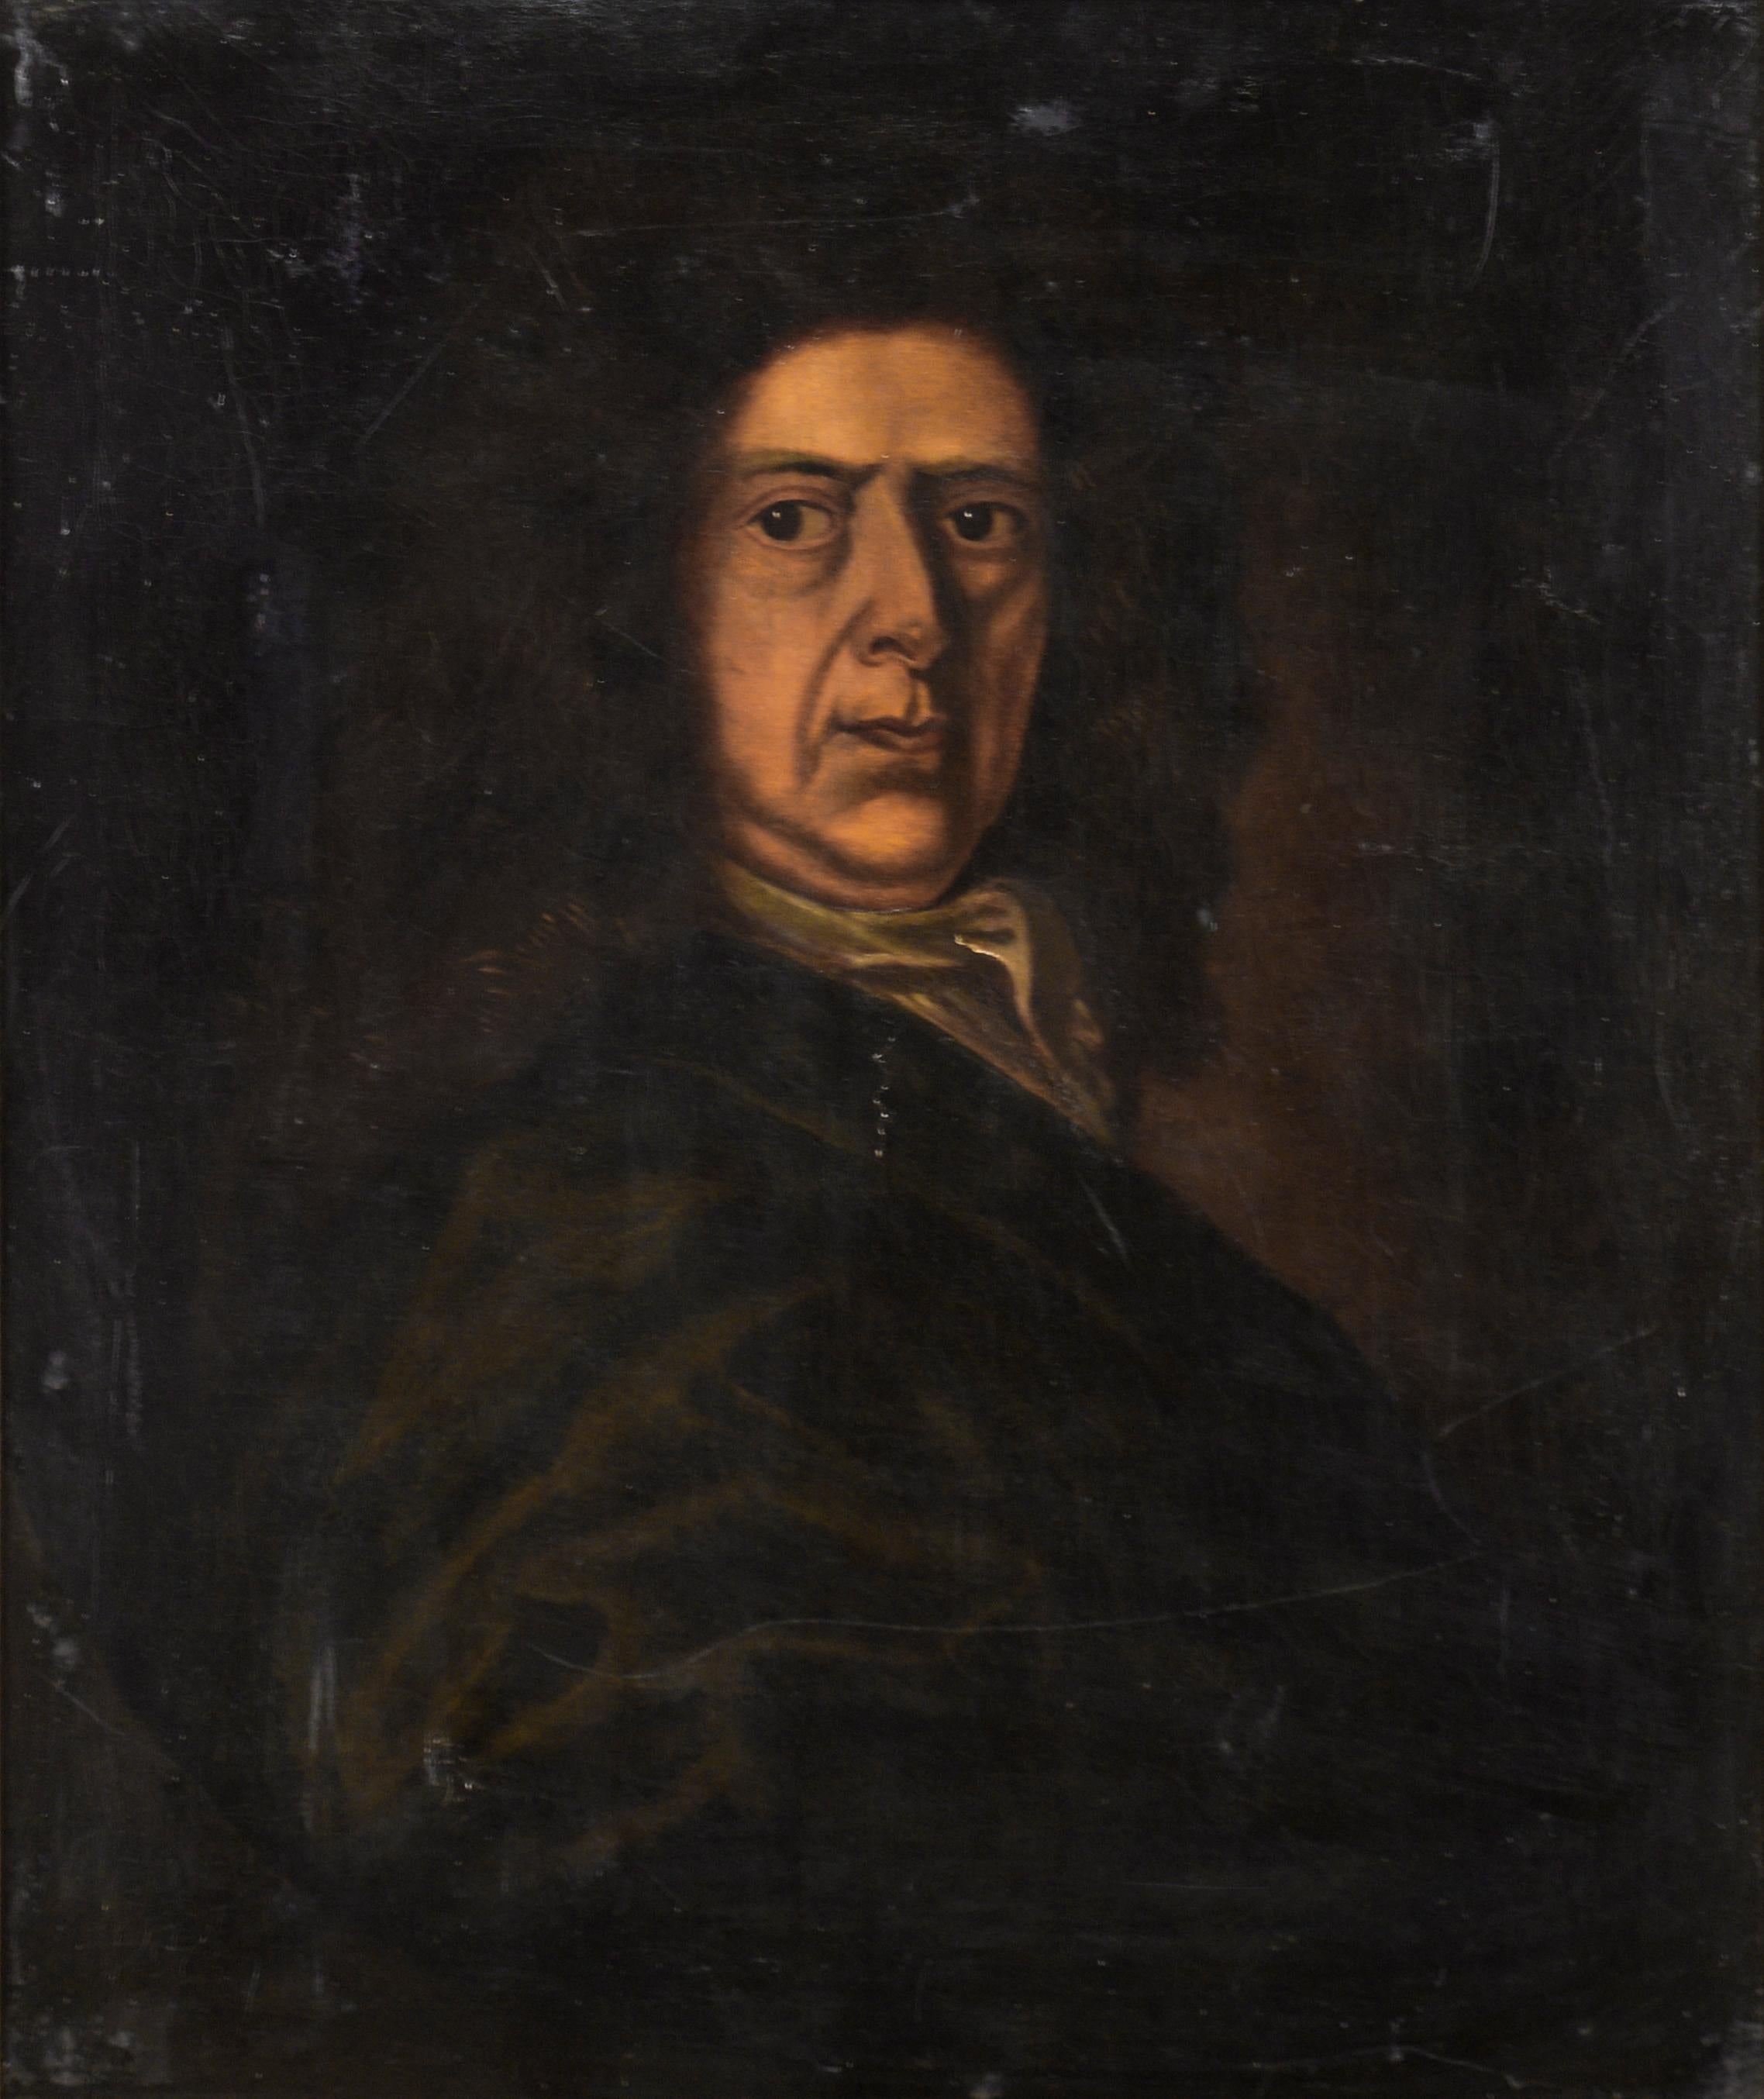 Porträt eines englischen Gentleman „Sir“  – Painting von English school 18th century